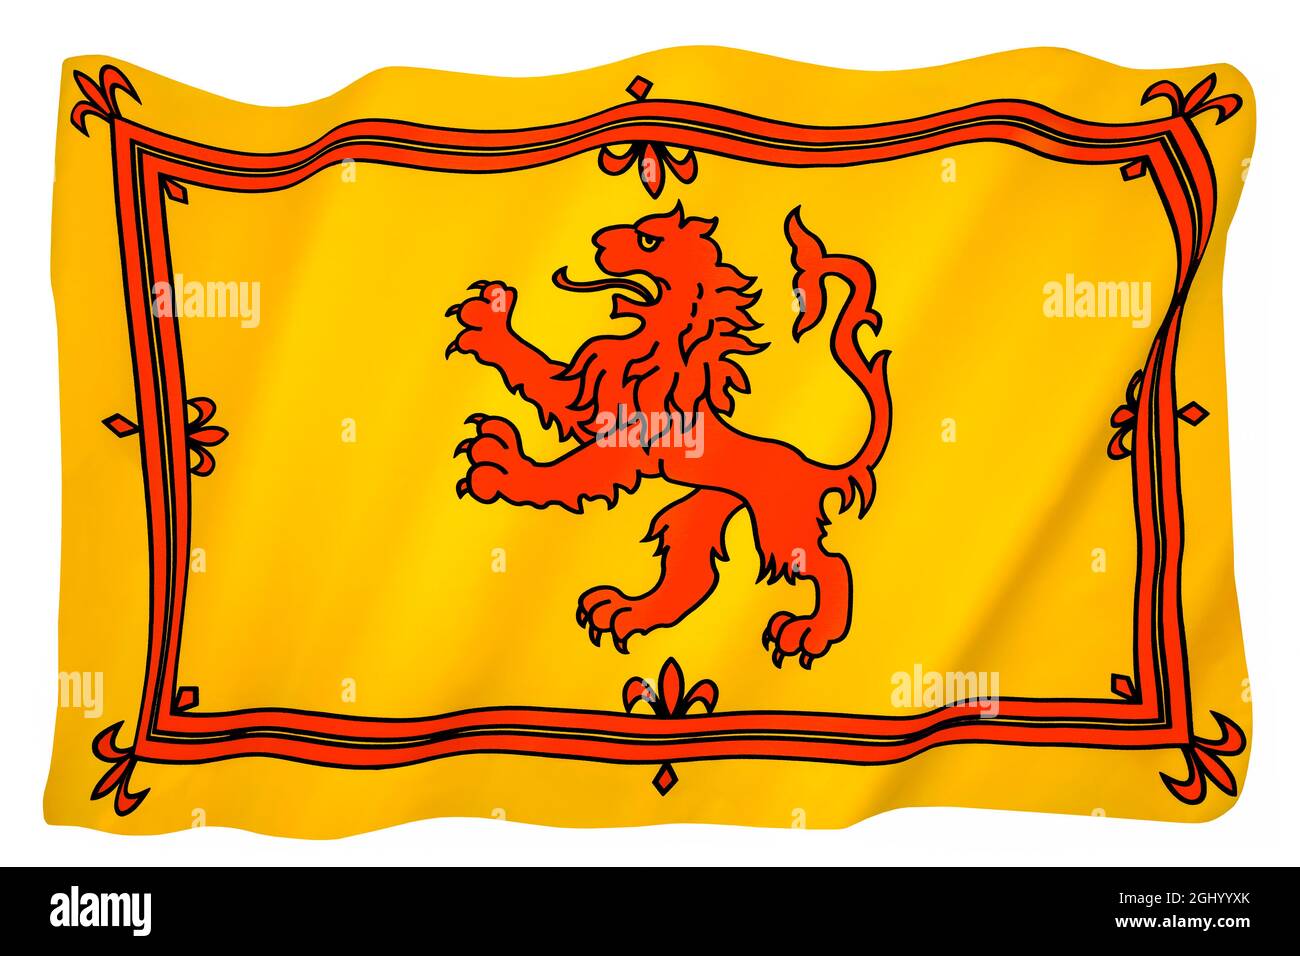 Le Royal Standard of Scotland, également connu sous le nom de Banner du Roi des Écossais ou plus communément le Lion endémique d'Écosse, est l'interdiction royale écossaise Banque D'Images